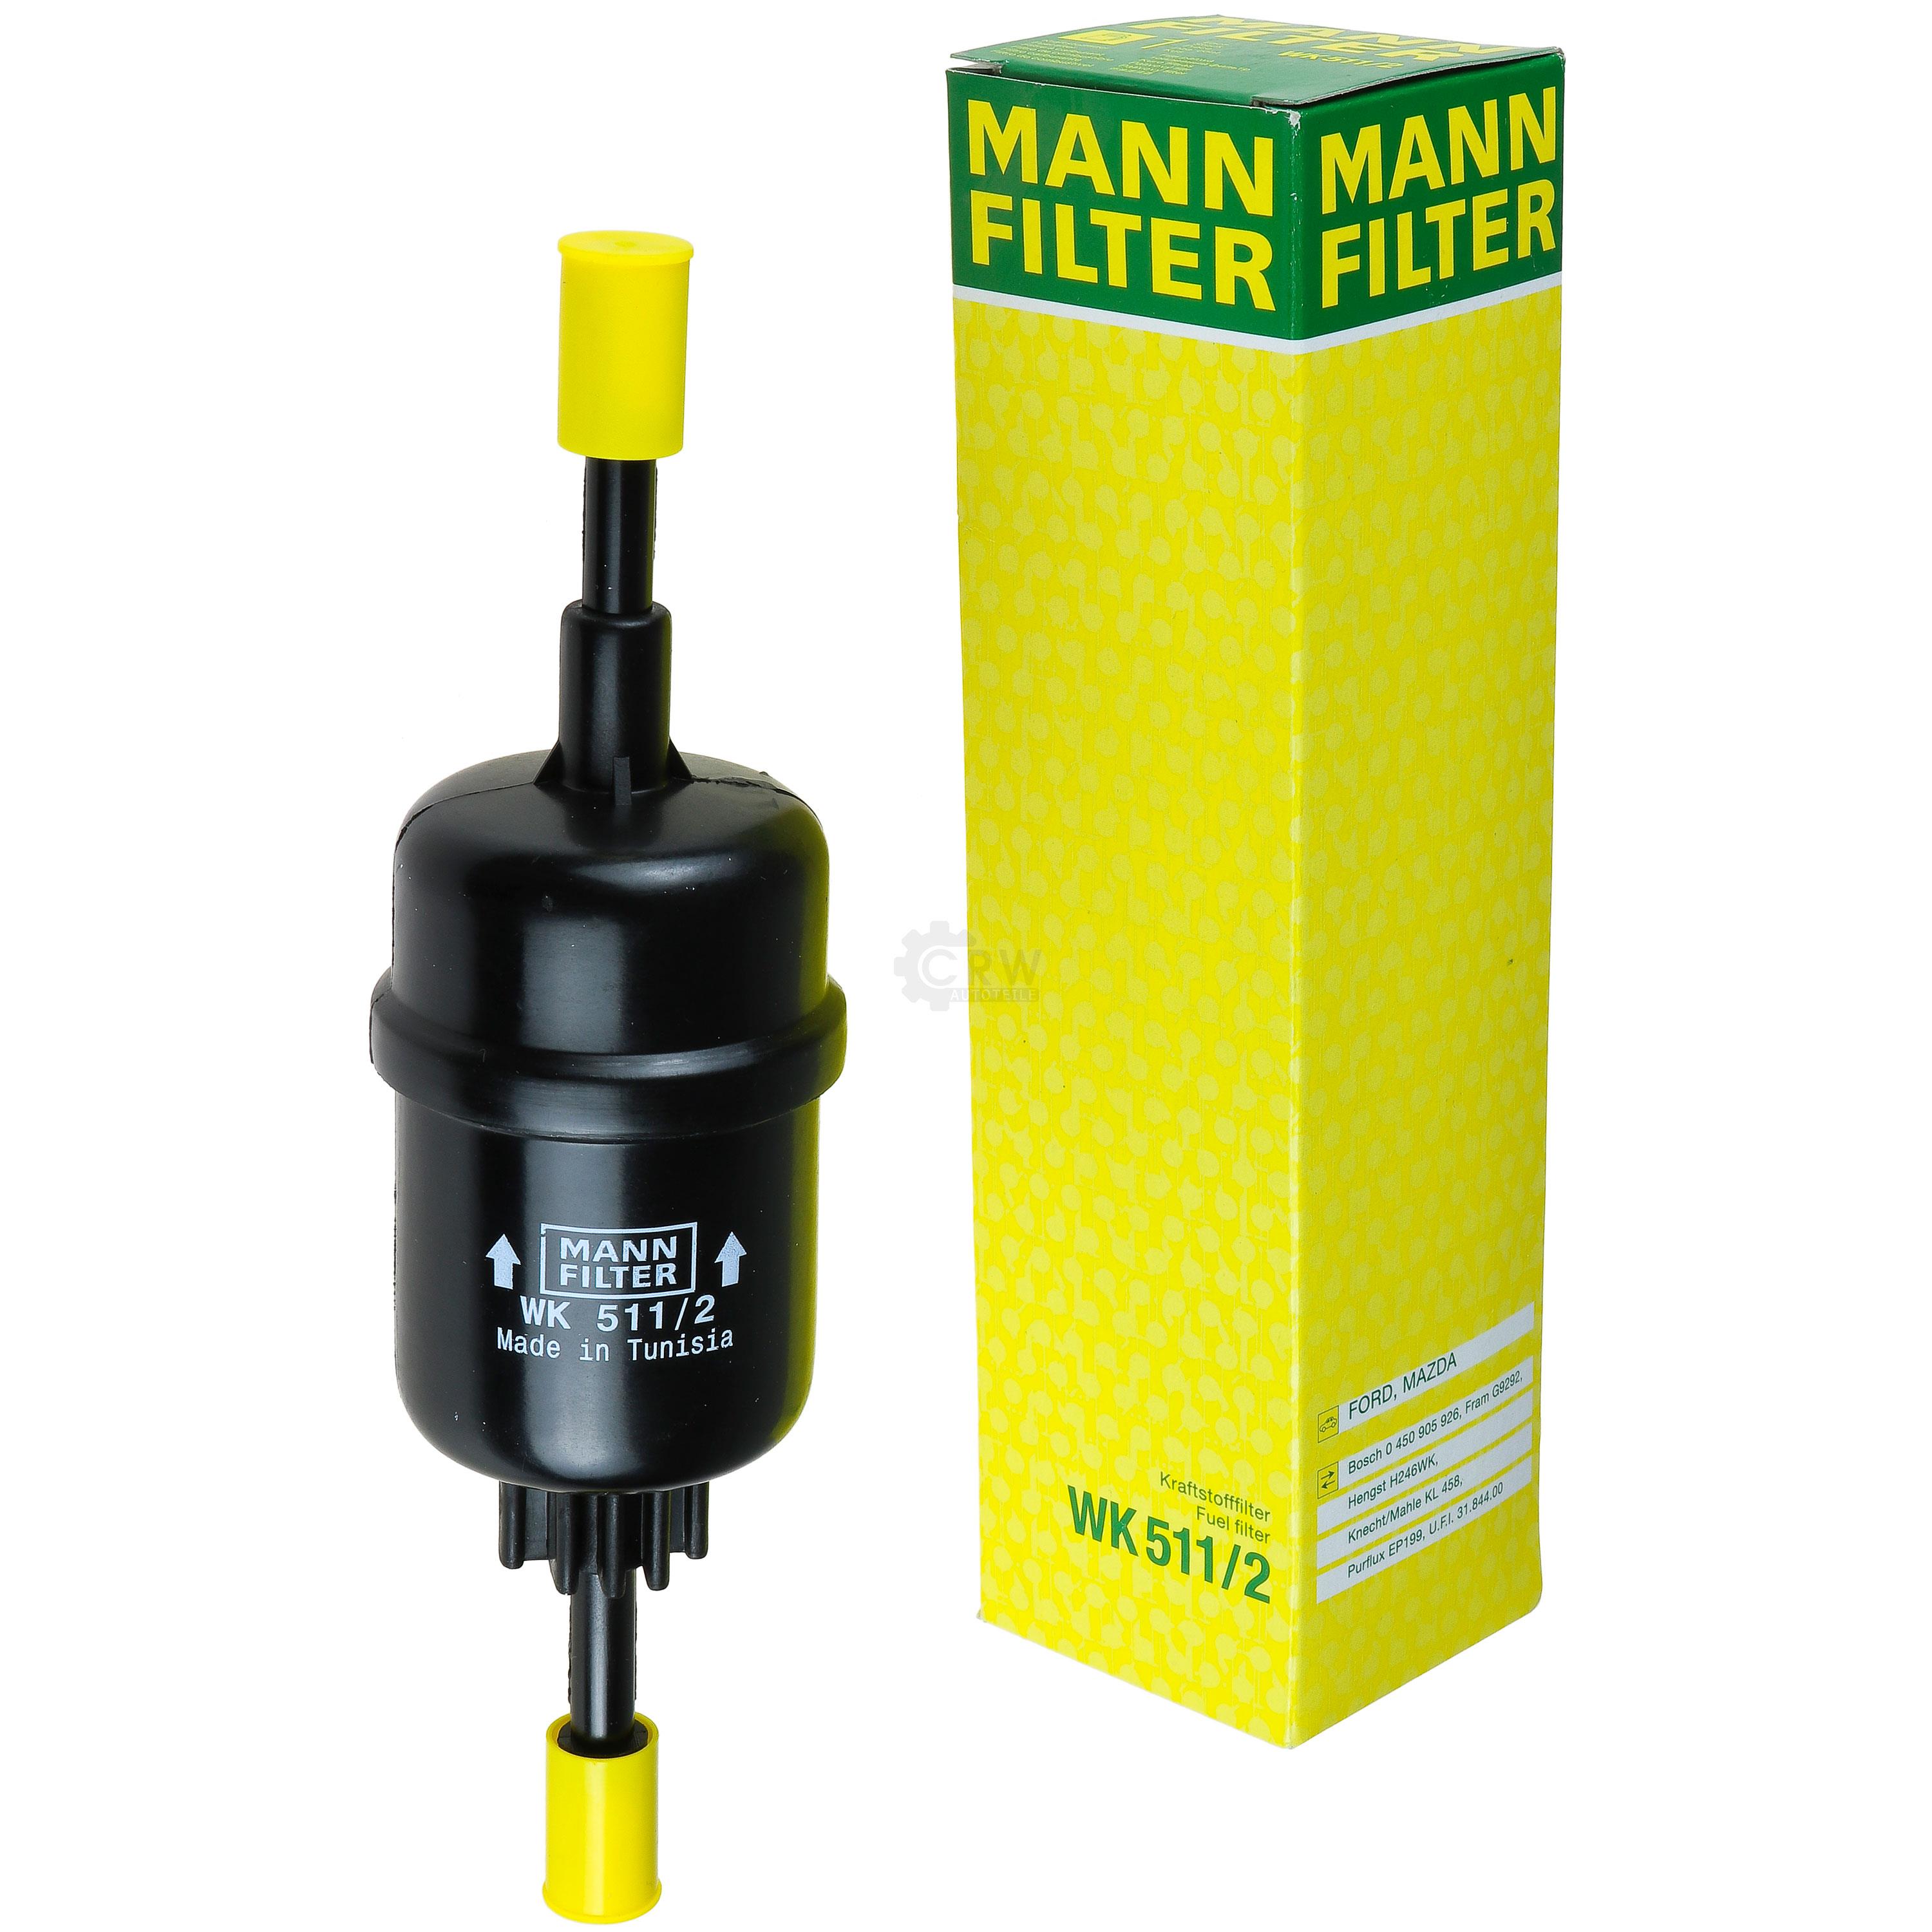 MANN-FILTER Kraftstofffilter WK 511/2 Fuel Filter